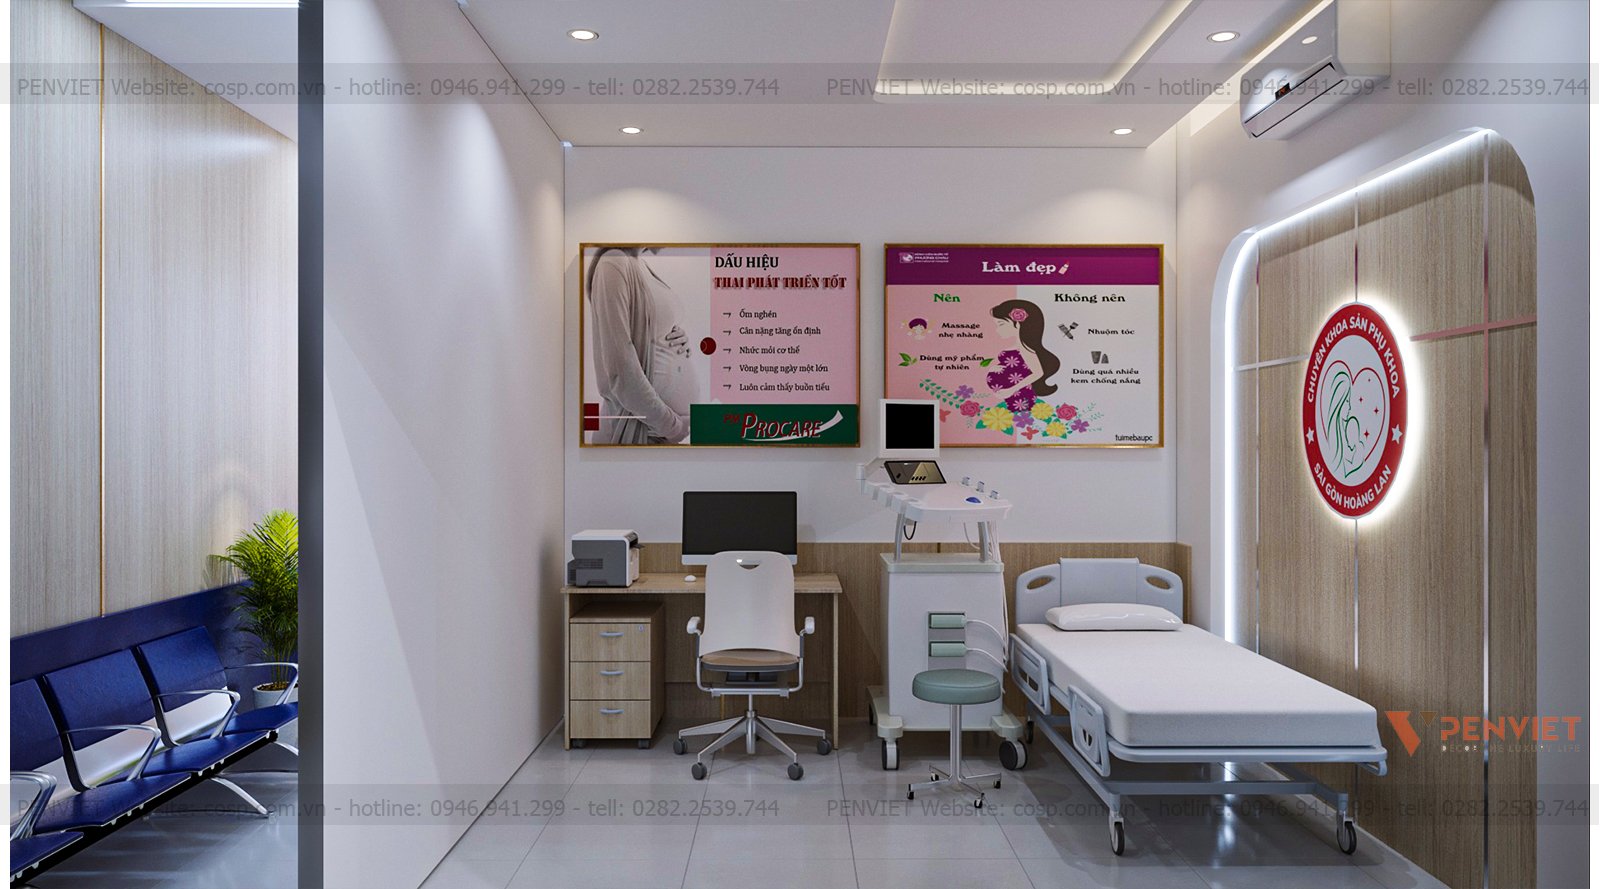 Décor trang trí phòng siêu âm sử dụng tranh về chủ đề y khoa vừa tạo sự sinh động động cho mẫu thiết kế phòng khám sản phụ khoa vừa có thể cung cấp kiến thức cho người bệnh.